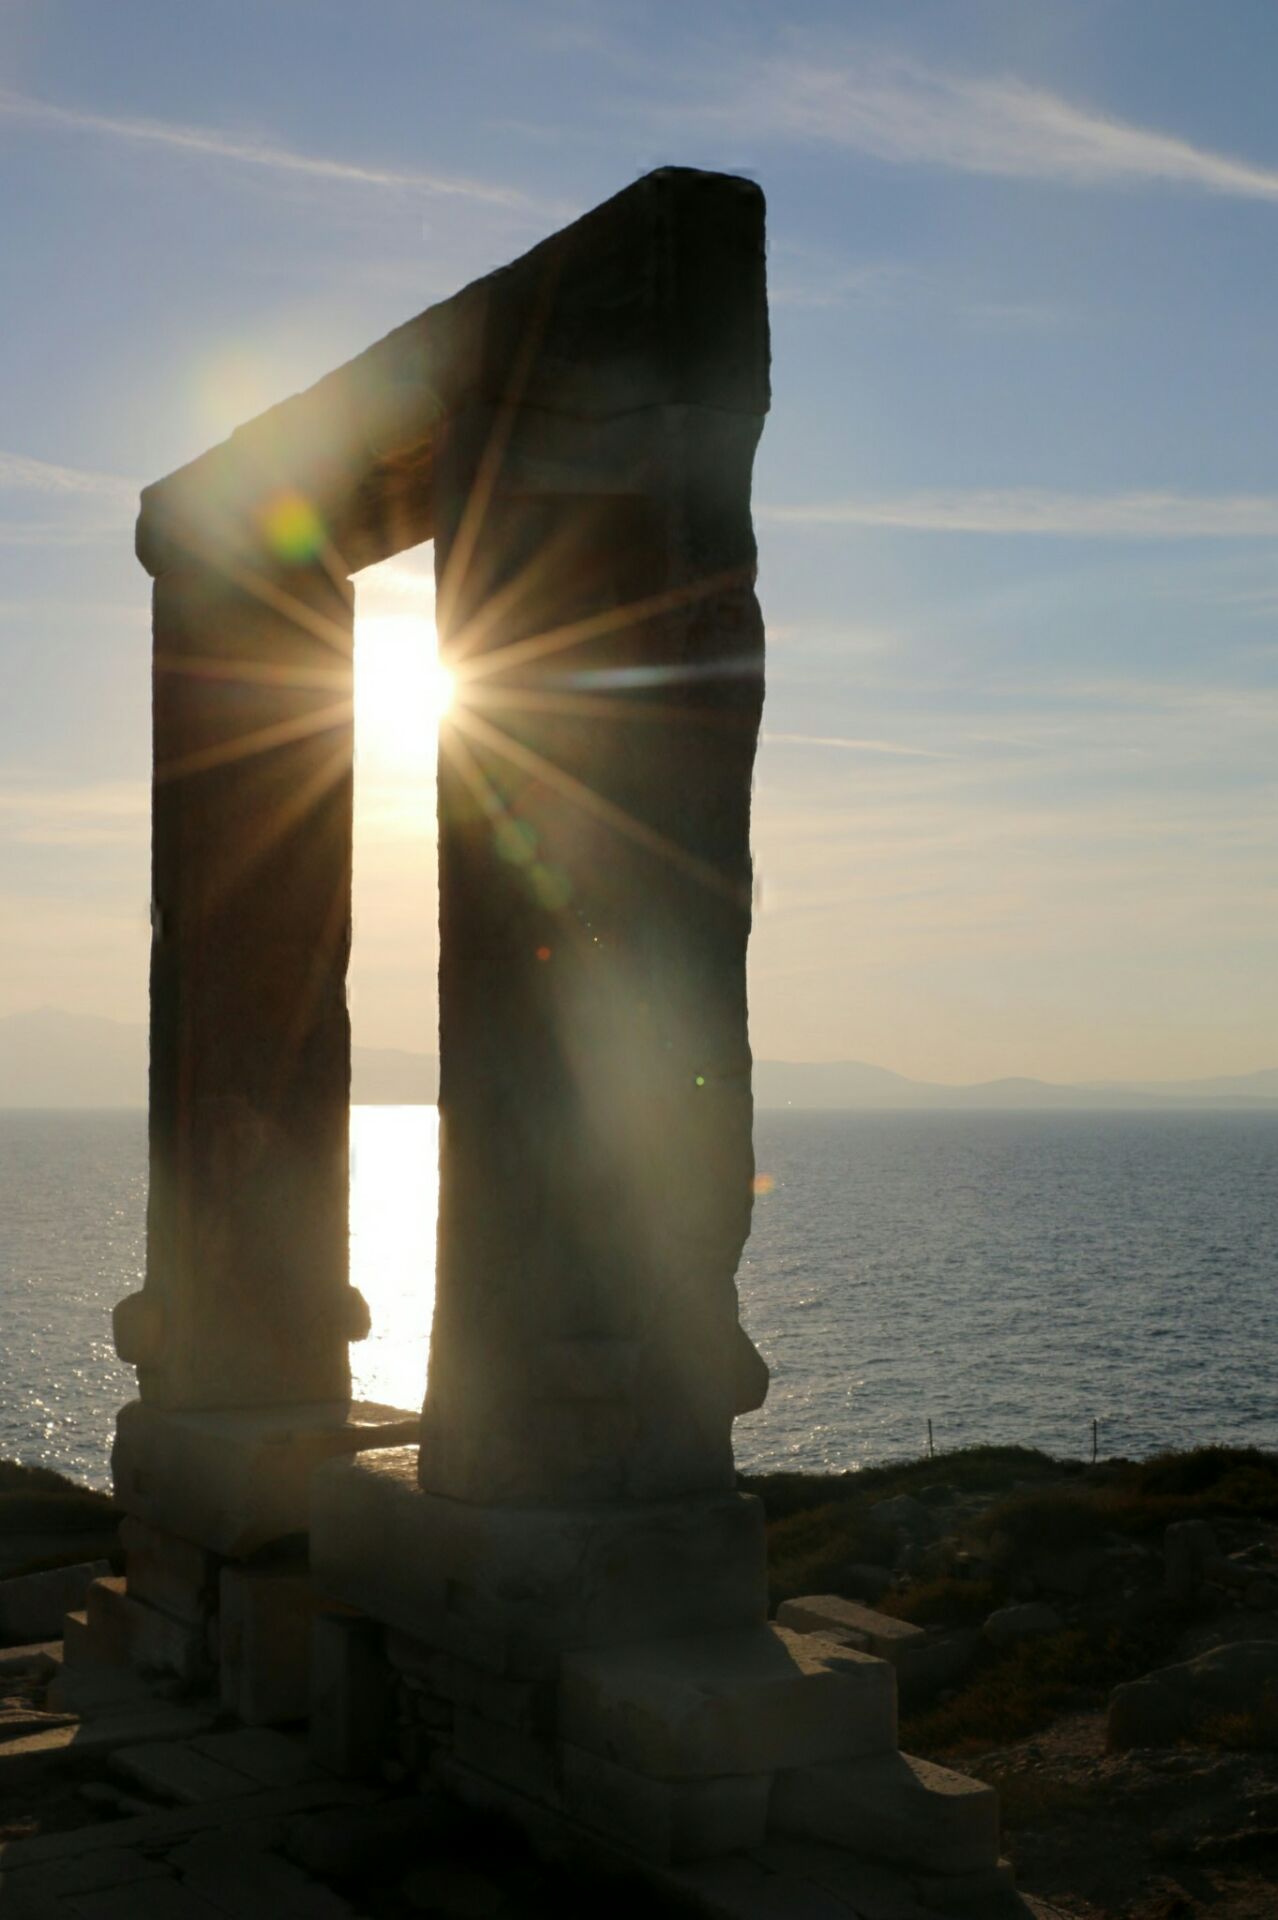 这是纳克索斯岛上最著名的阿波罗门，他在海边的高地之上，当阳光透过门中照射到海岸上，真感觉神圣无比。